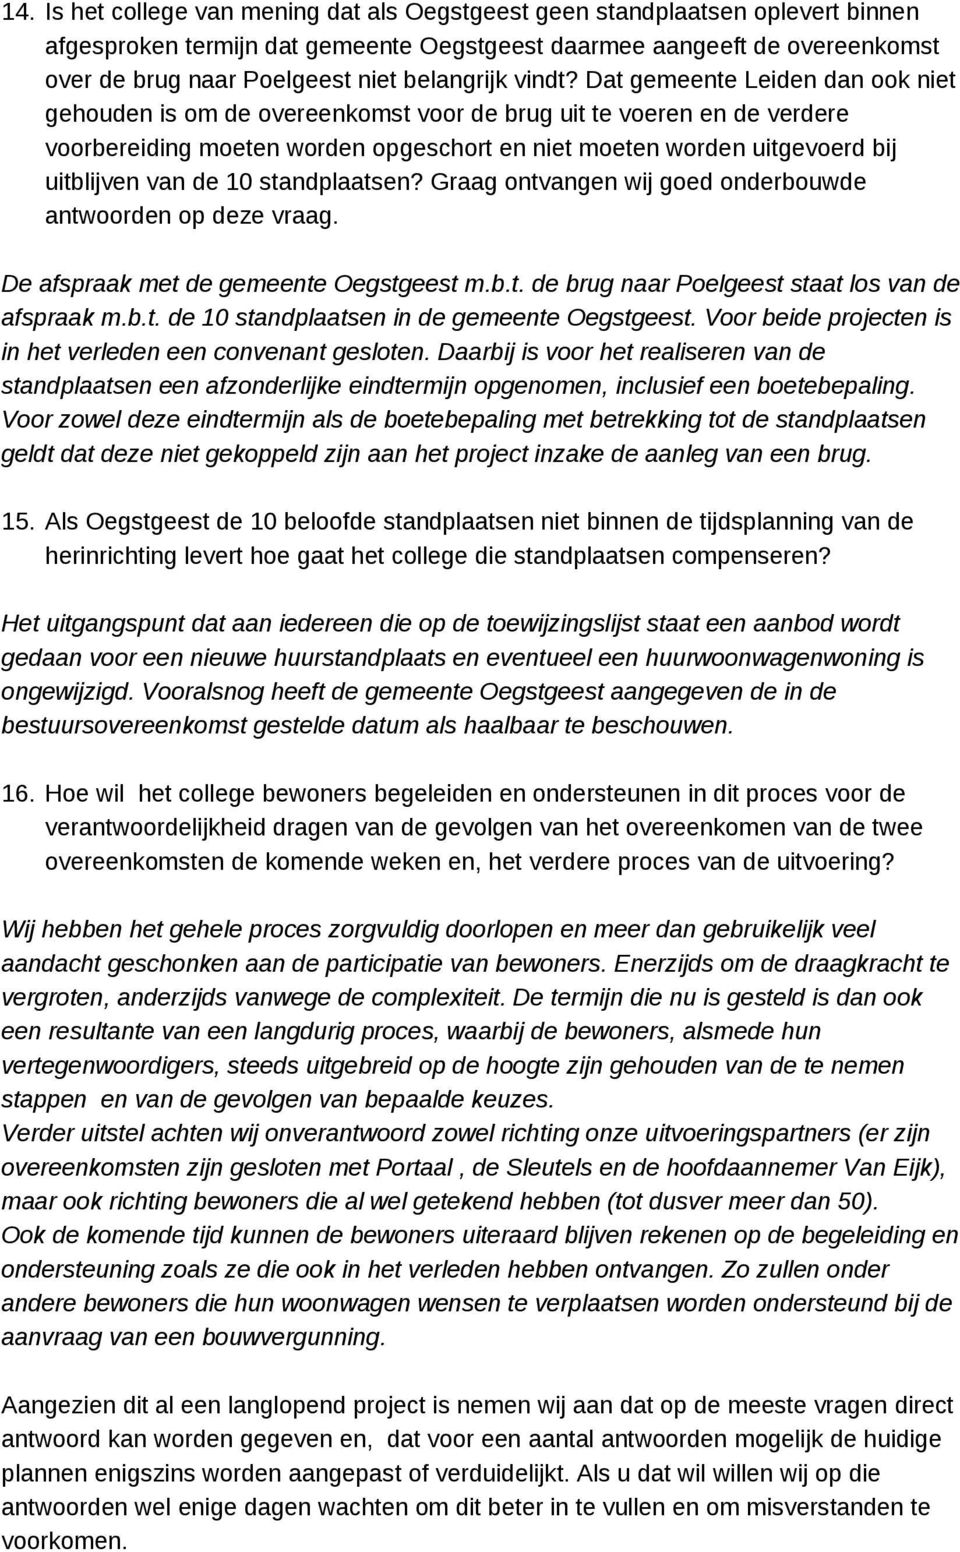 Dat gemeente Leiden dan ook niet gehouden is om de overeenkomst voor de brug uit te voeren en de verdere voorbereiding moeten worden opgeschort en niet moeten worden uitgevoerd bij uitblijven van de